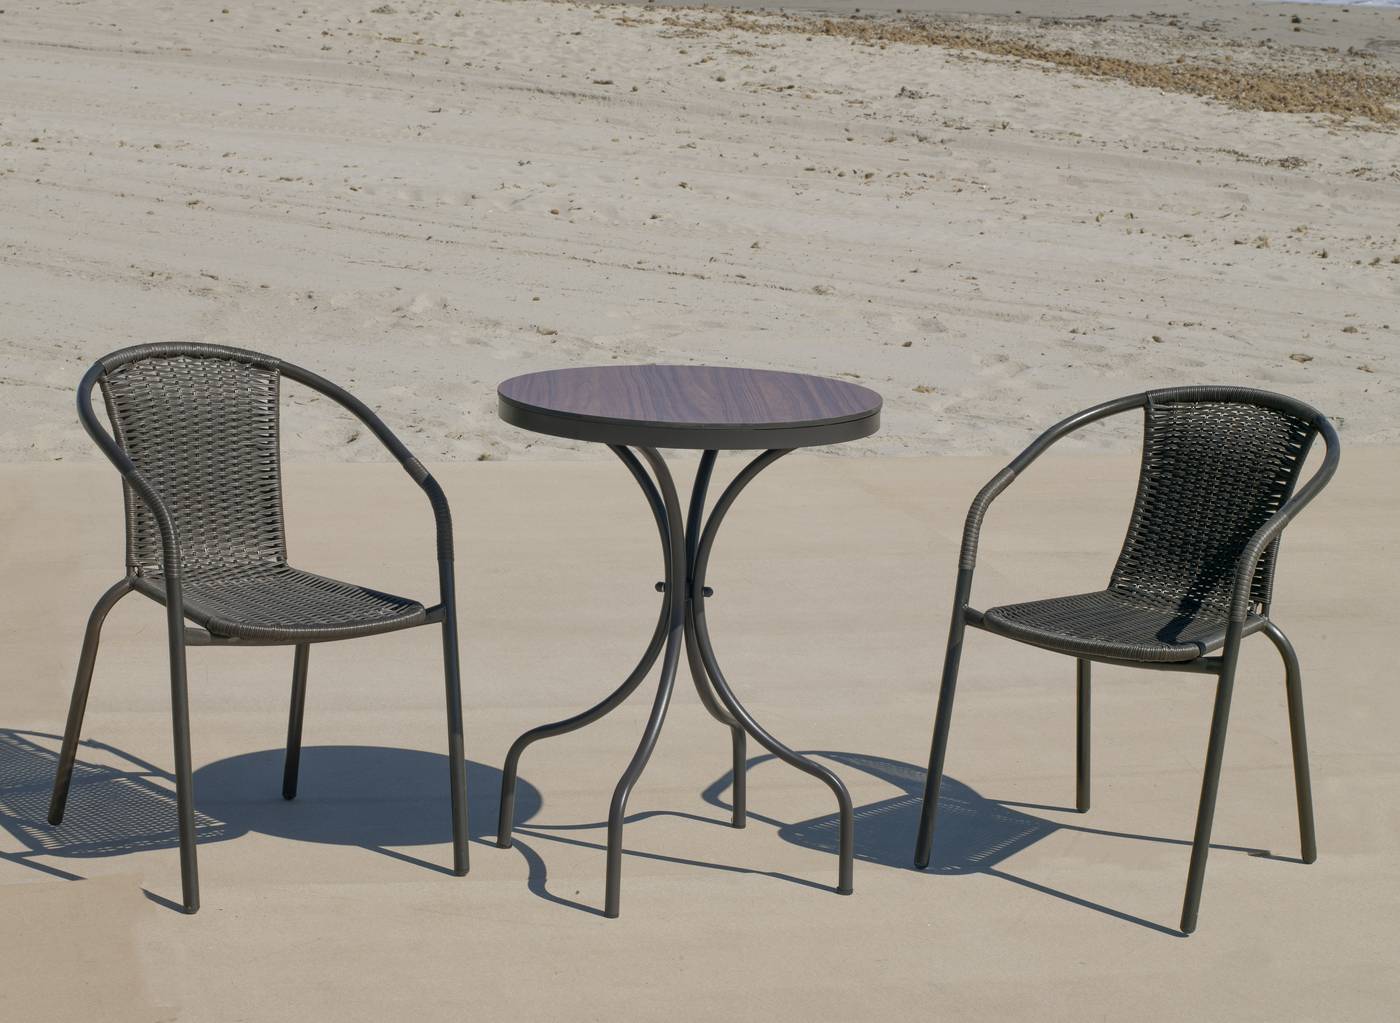 Conjunto color marrón: Mesa redonda de aluminio con tablero HPL de 60 cm + 2 sillones de acero y wicker.